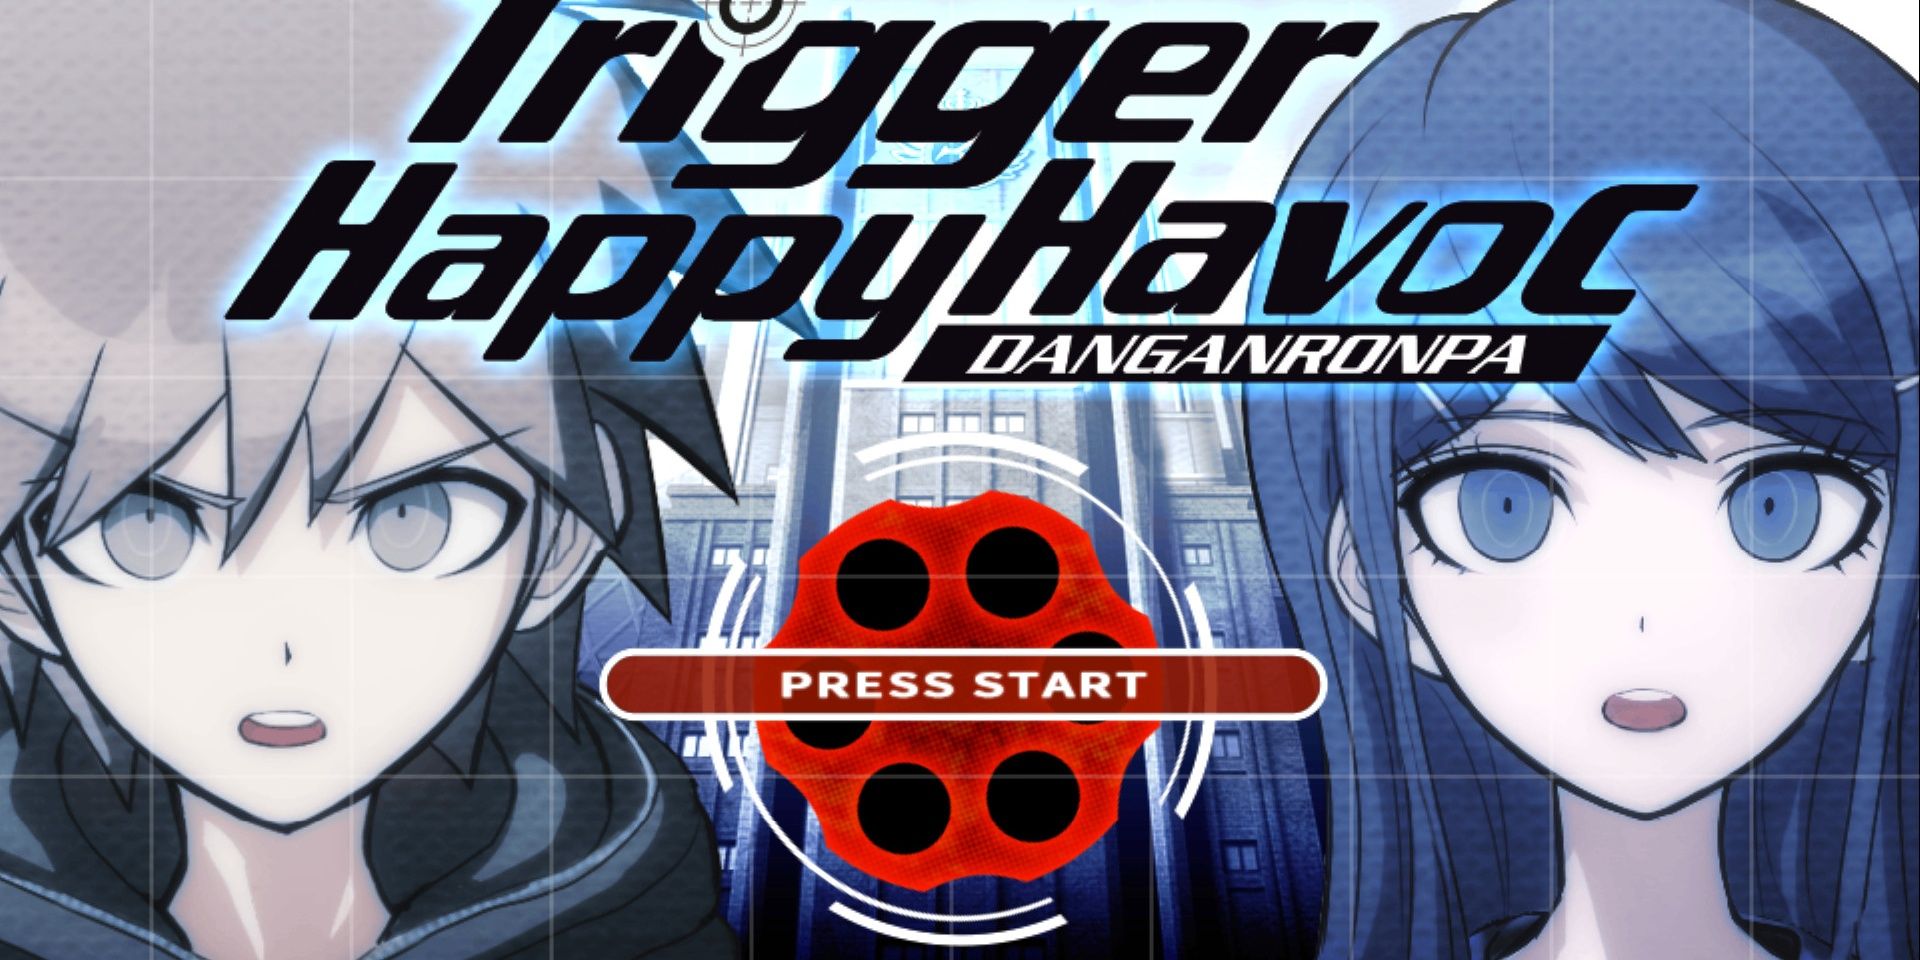 Página inicial para Danganronpa Trigger Happy Havoc